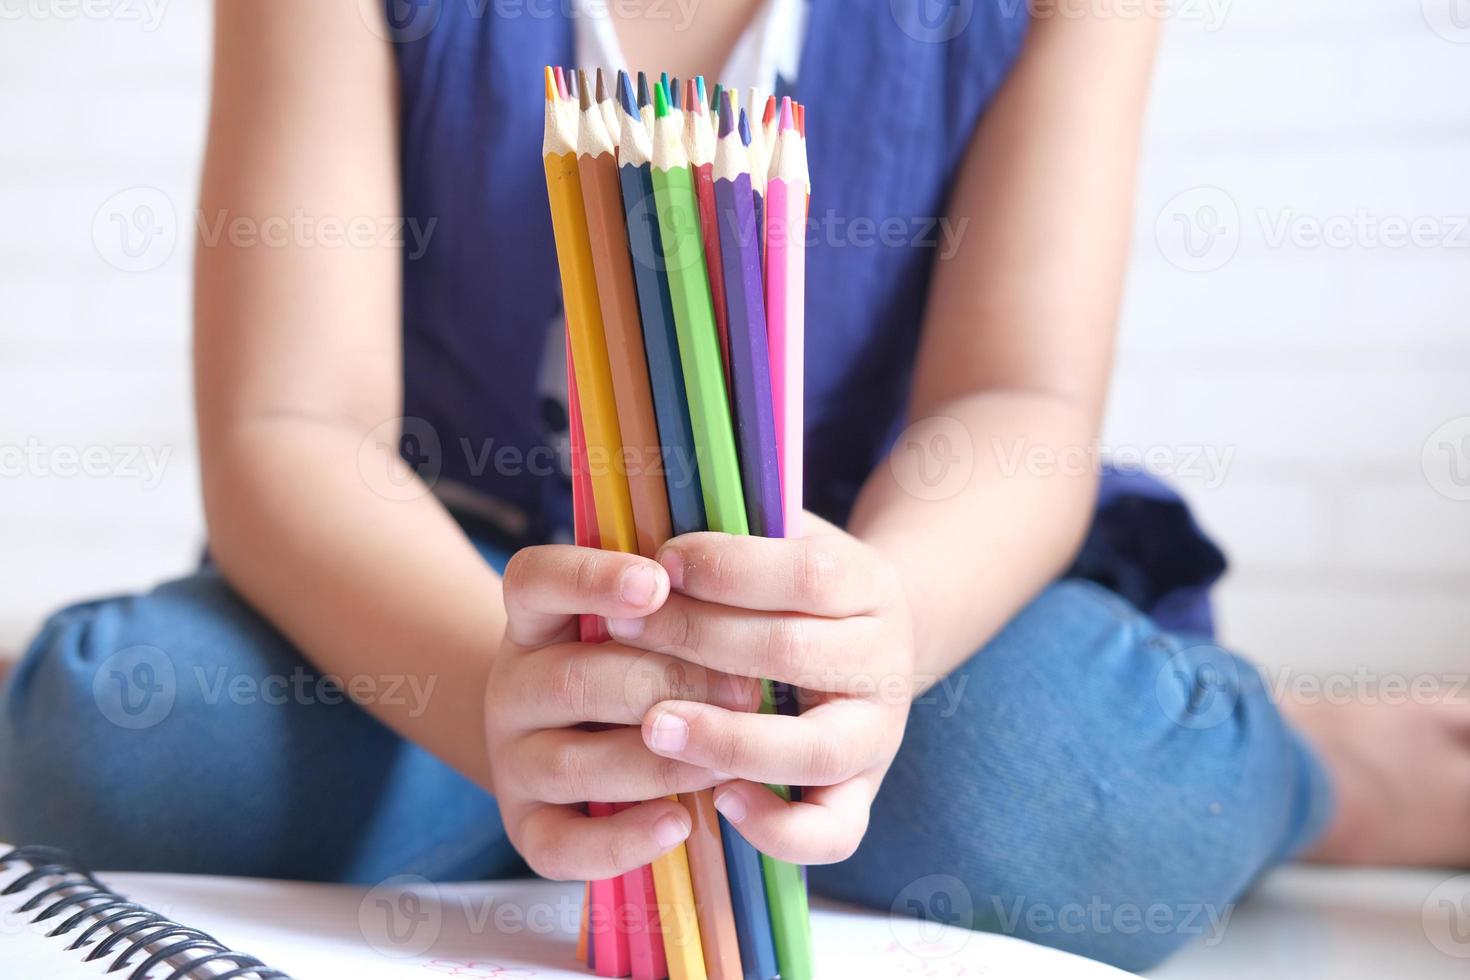 bambina con in mano molte matite colorate seduta sul pavimento foto